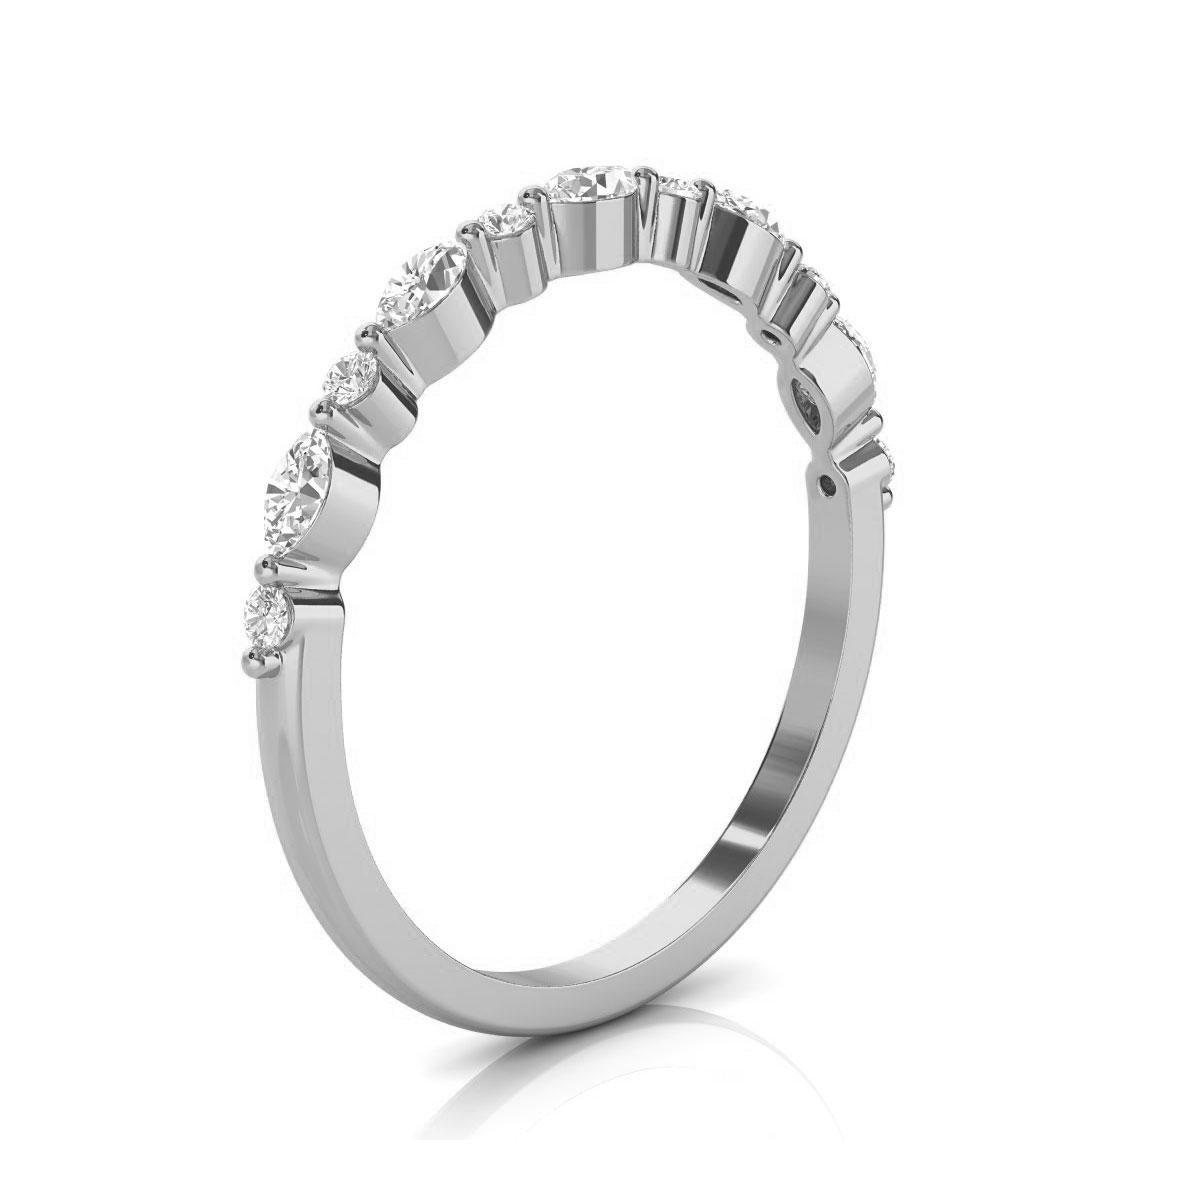 In diesem minimalistischen Ring wechseln sich runde Brillanten und marquise Diamanten ab, die auf dünnem Metall gefasst sind. Er ist stapelbar, und unsere Kunden lieben ihn! Erleben Sie den Unterschied persönlich!

Einzelheiten zum Produkt: 

Farbe